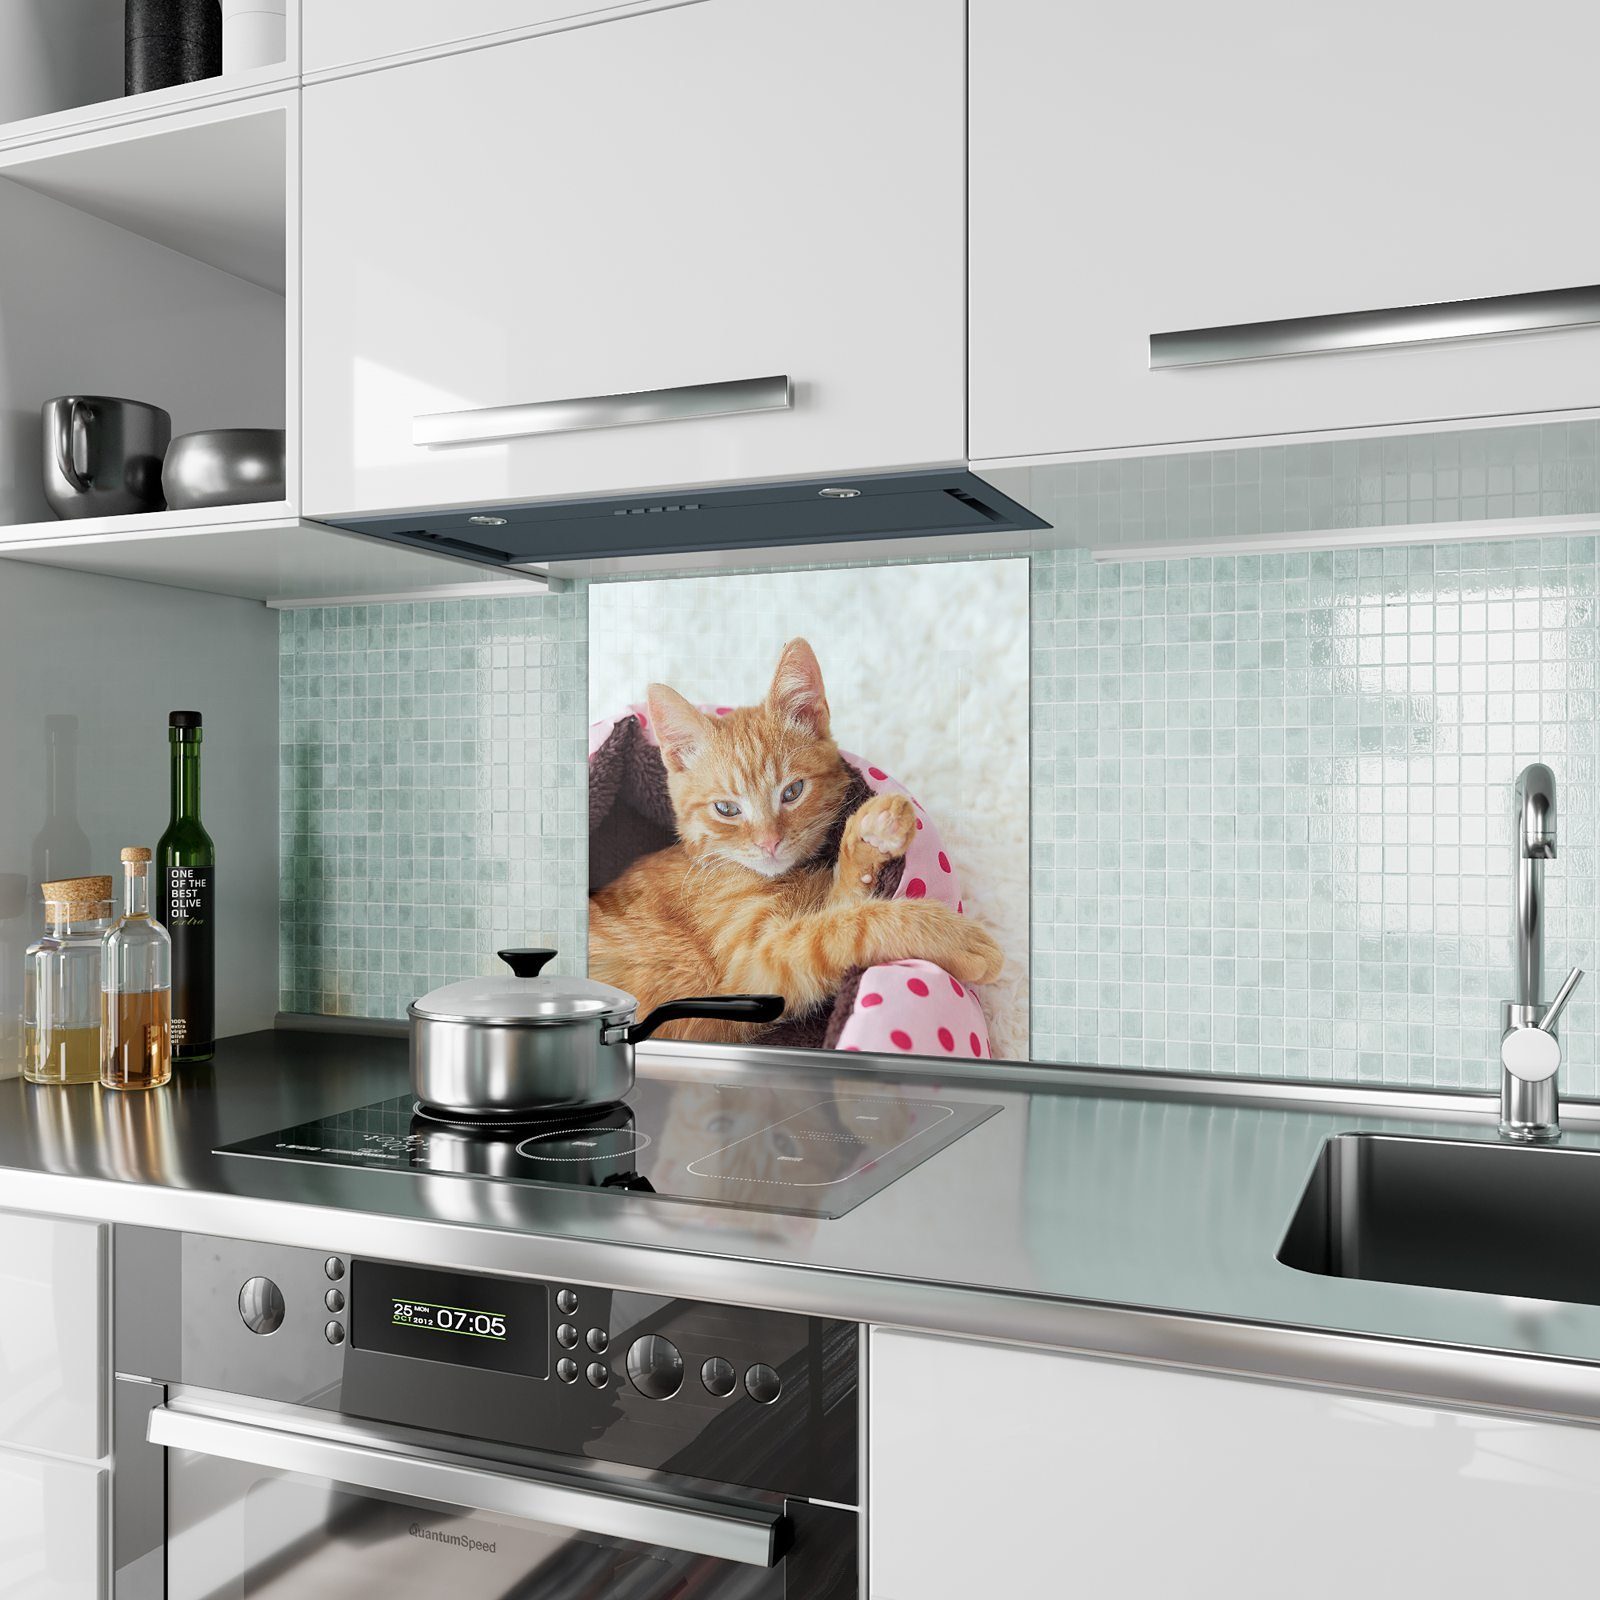 Körbchen Motiv Primedeco Küchenrückwand Glas Spritzschutz mit Katze im Küchenrückwand